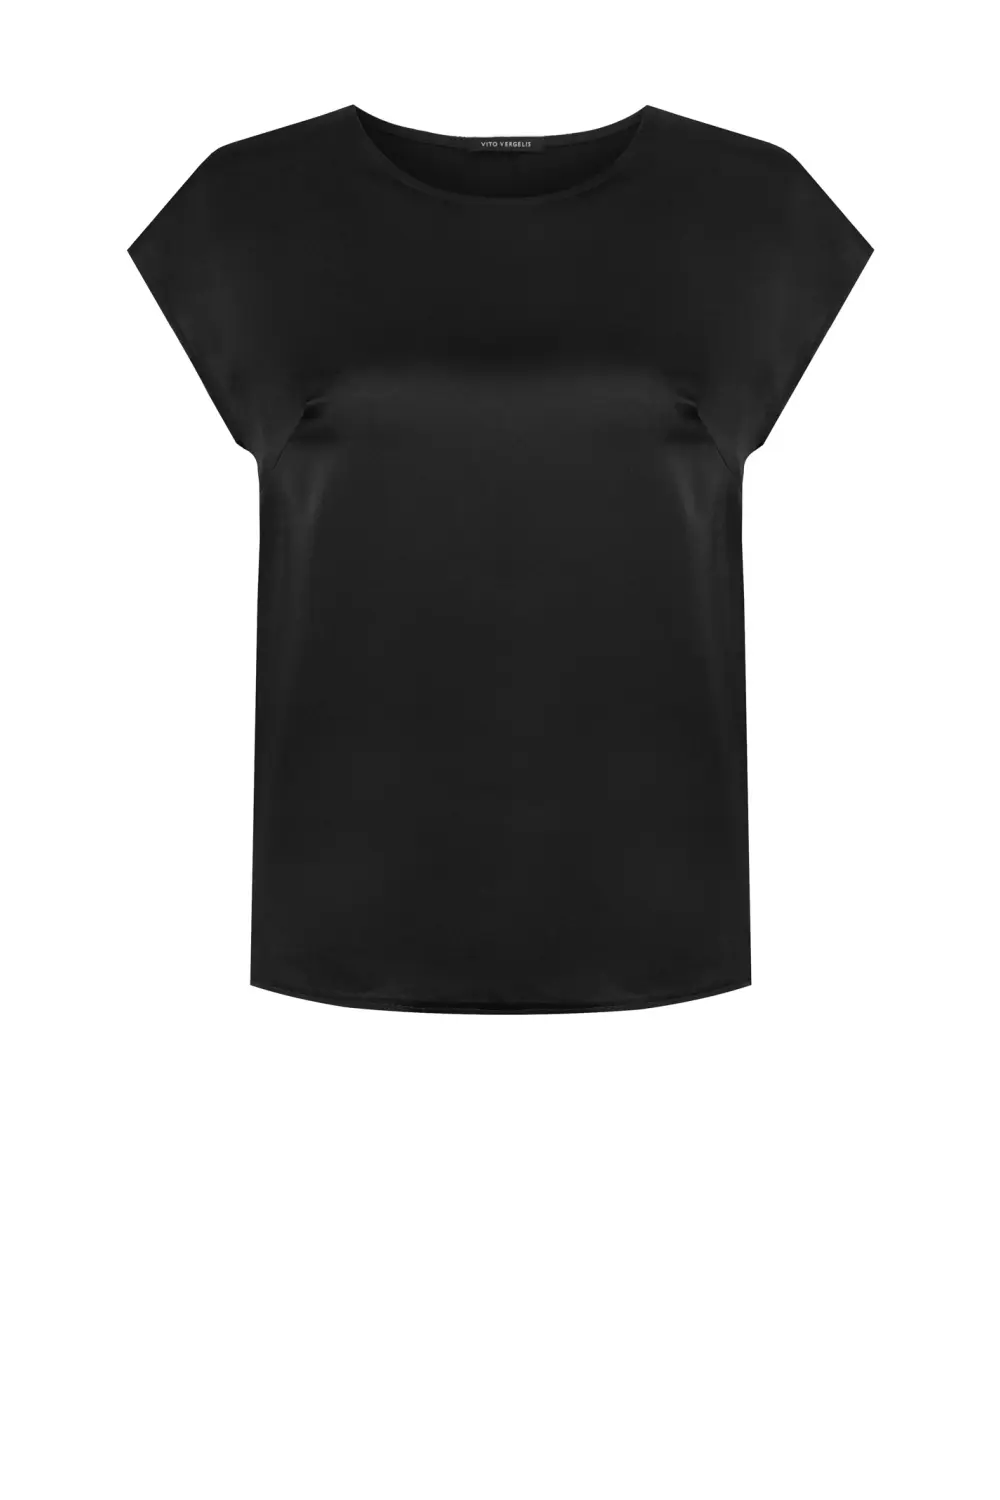 Czarna bluzka damska satynowa z połyskiem bluzka z krótkim rękawem wizytowa polska marka Vito Vergelis